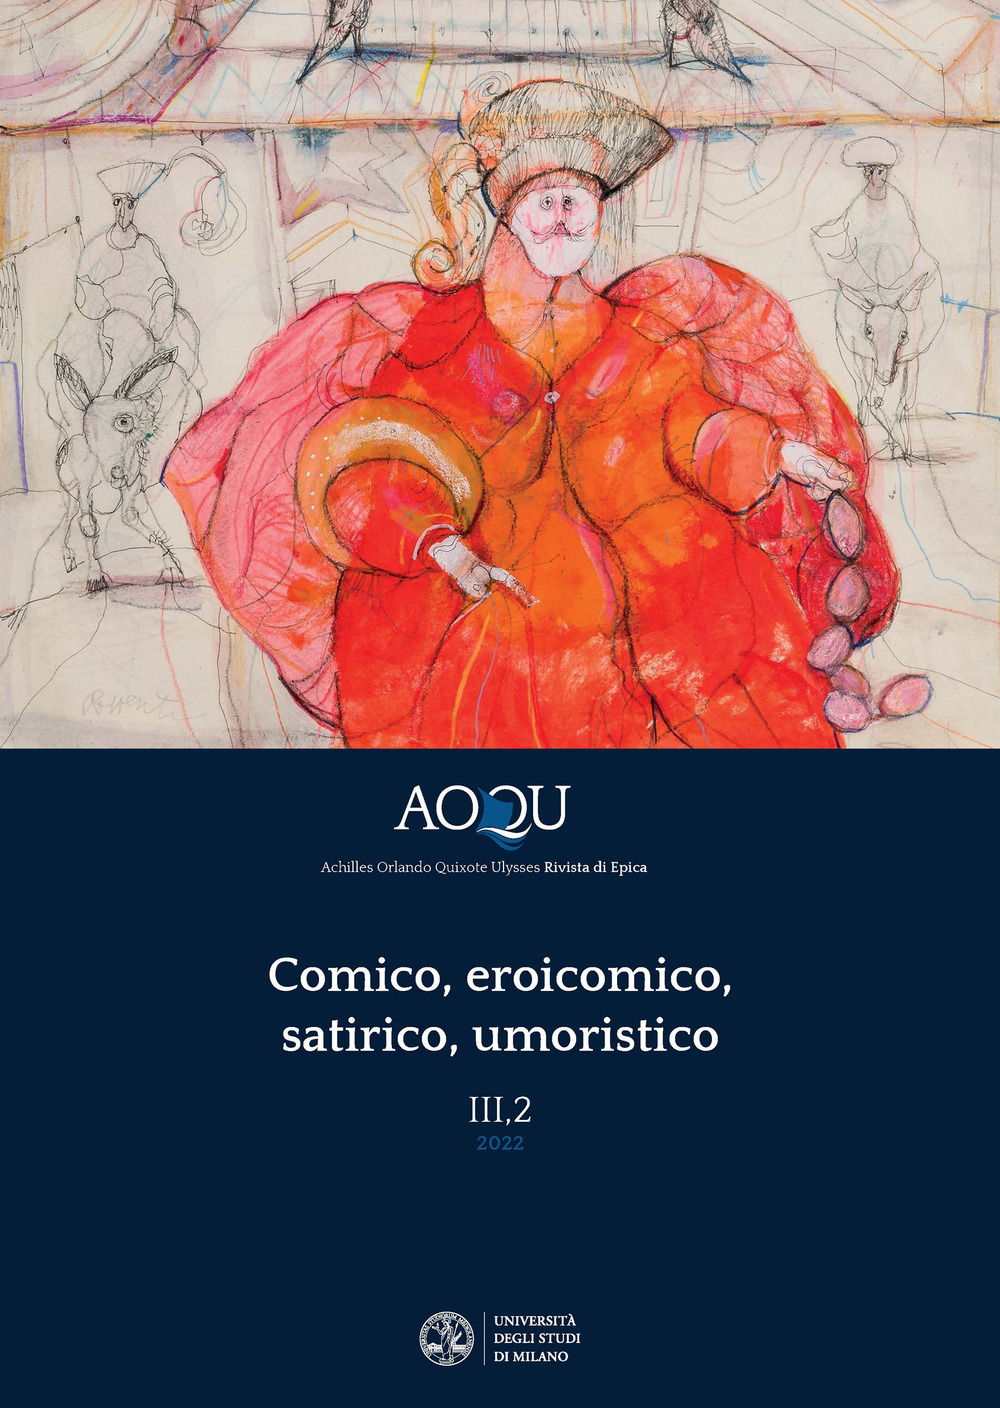 AOQU. Achilles Orlando Quixote Ulysses. Rivista di epica (2022). Vol. 3: Comico, eroicomico, satirico, umoristico